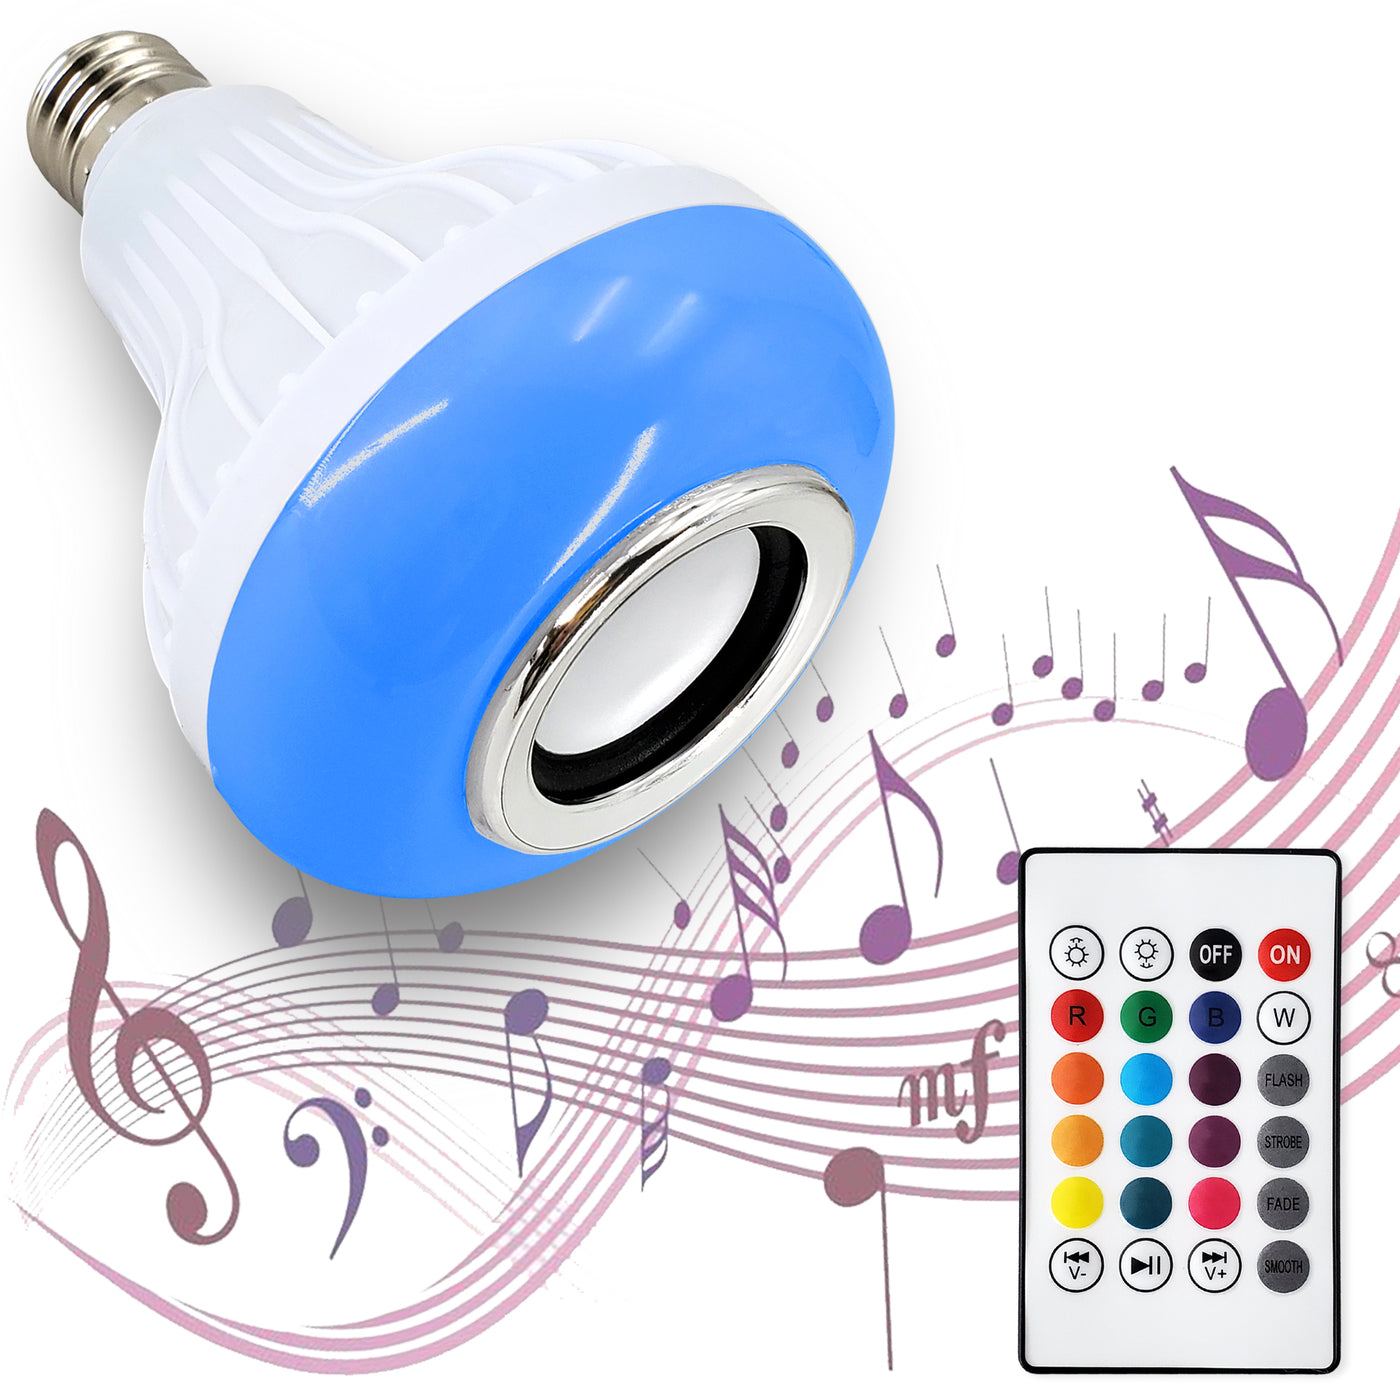 speaker bulb